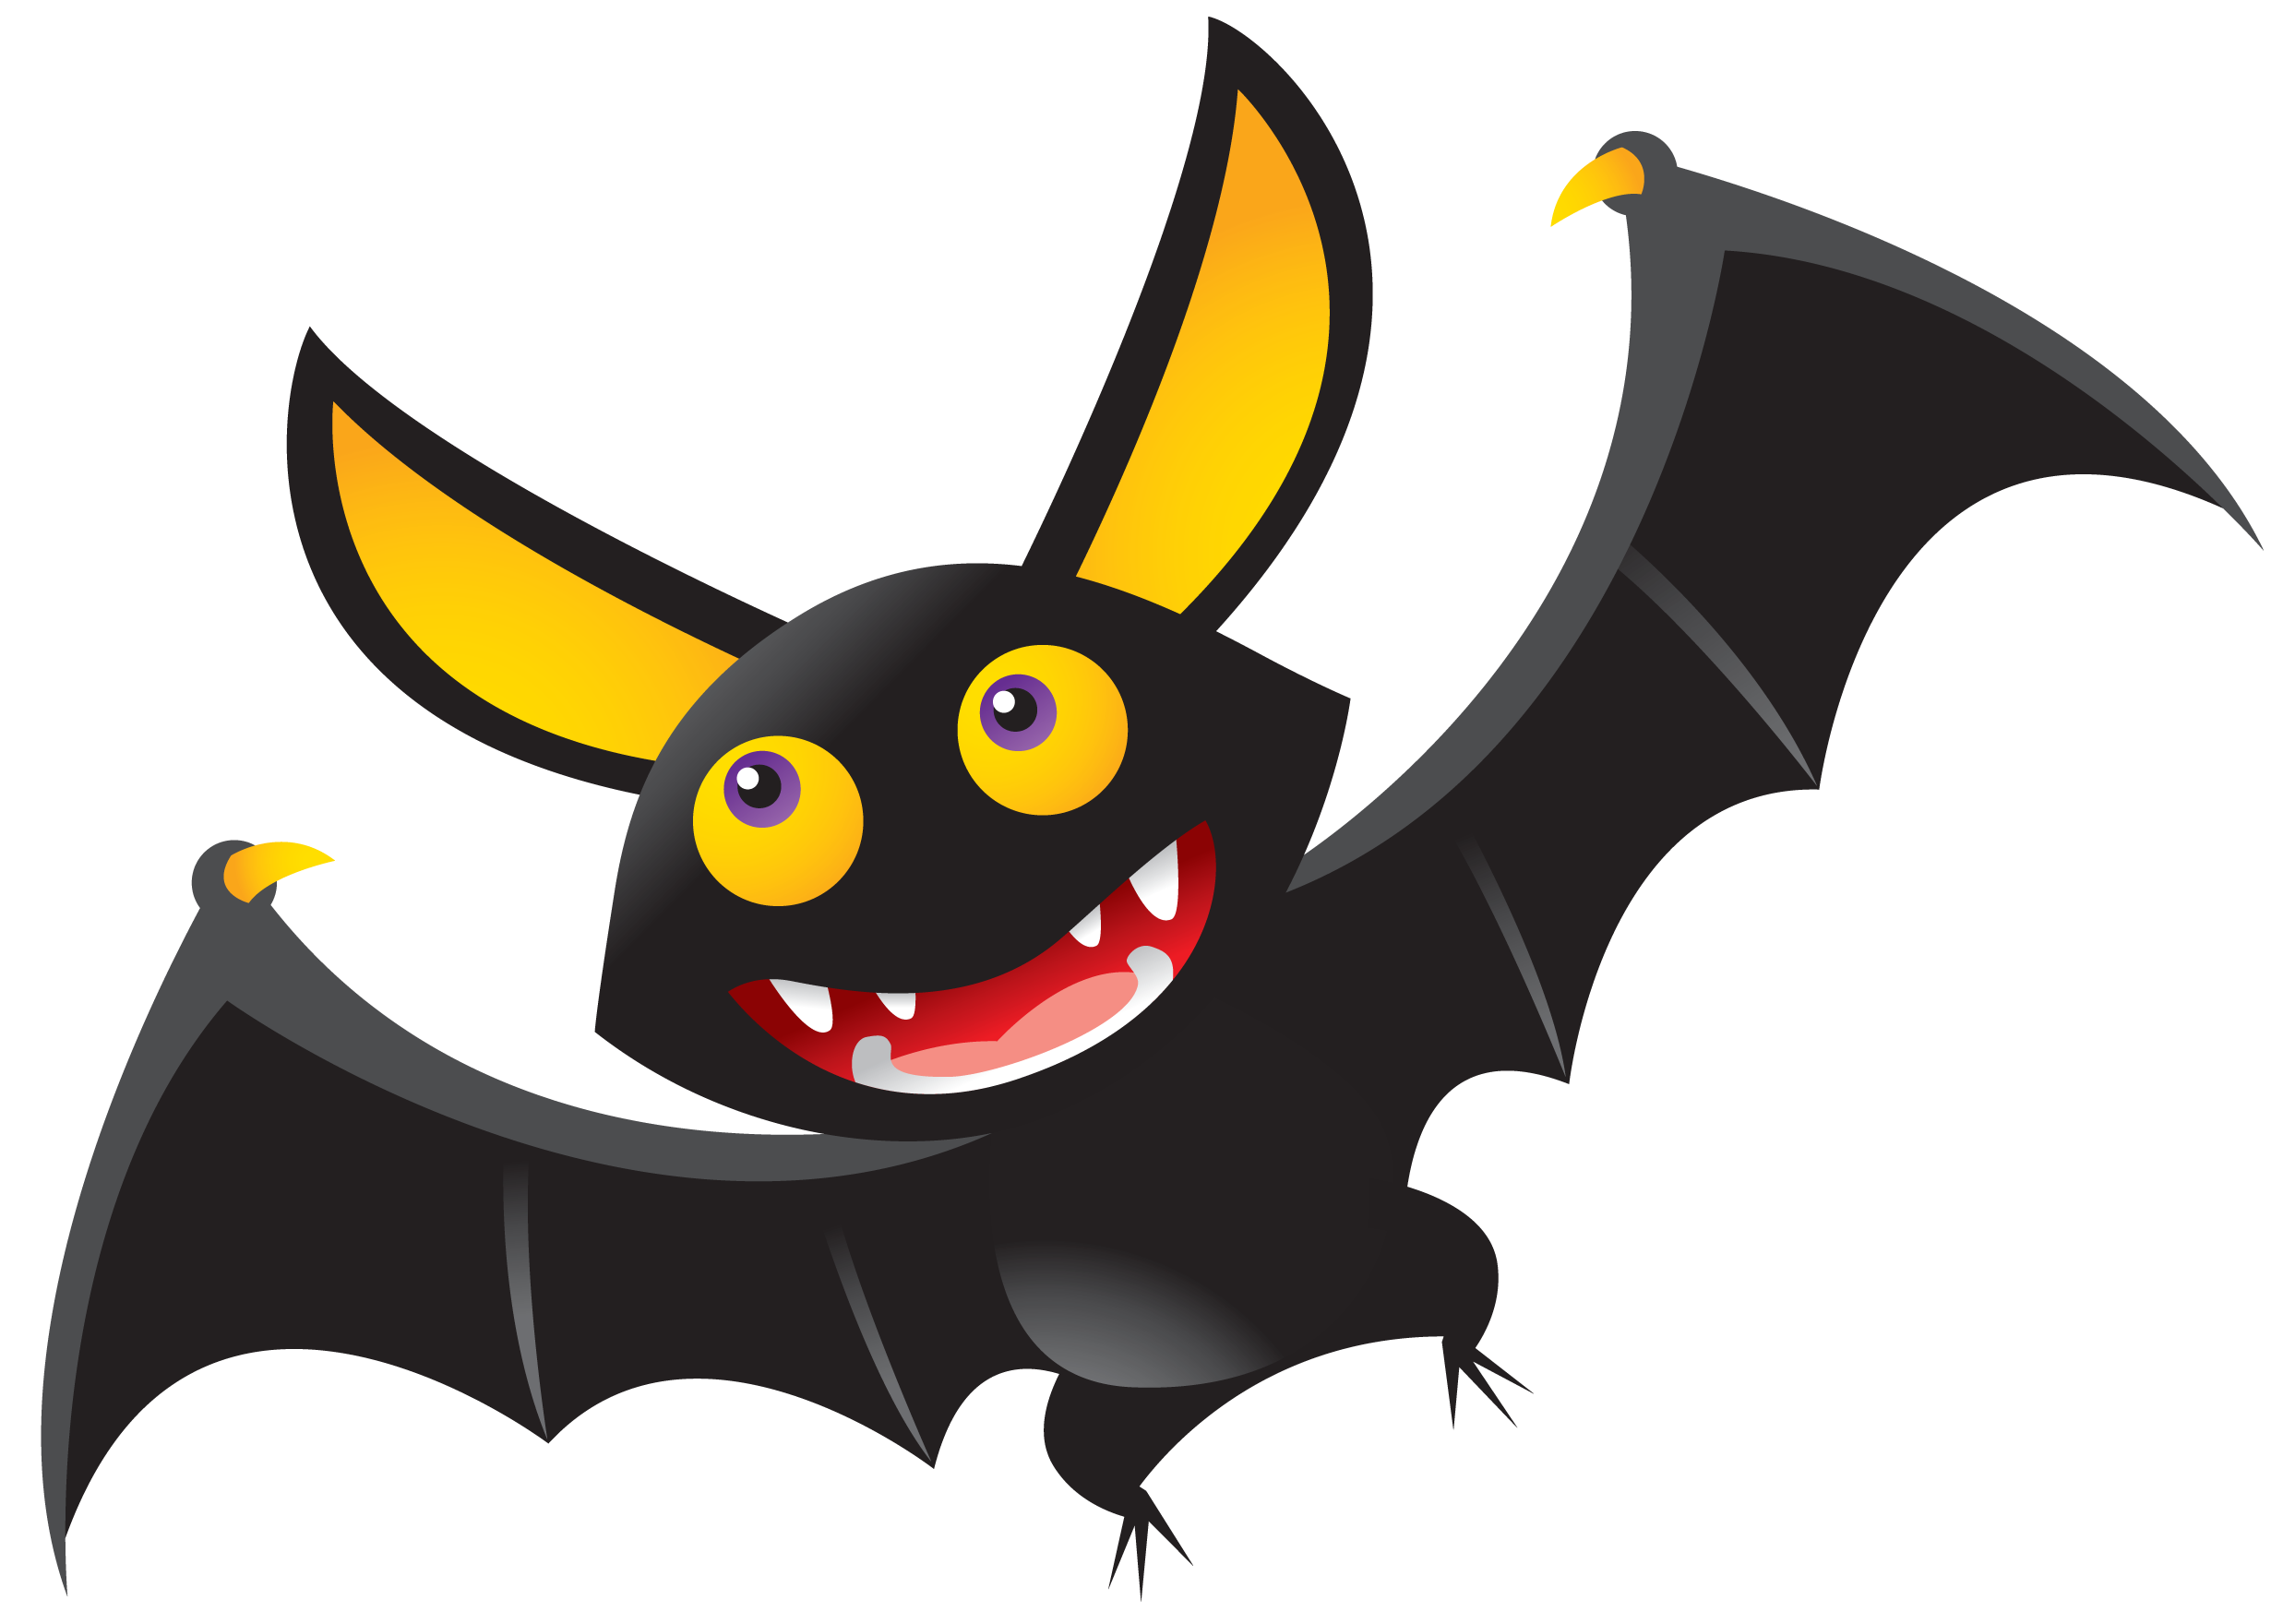 Bat Halloween Free Download Image PNG Image